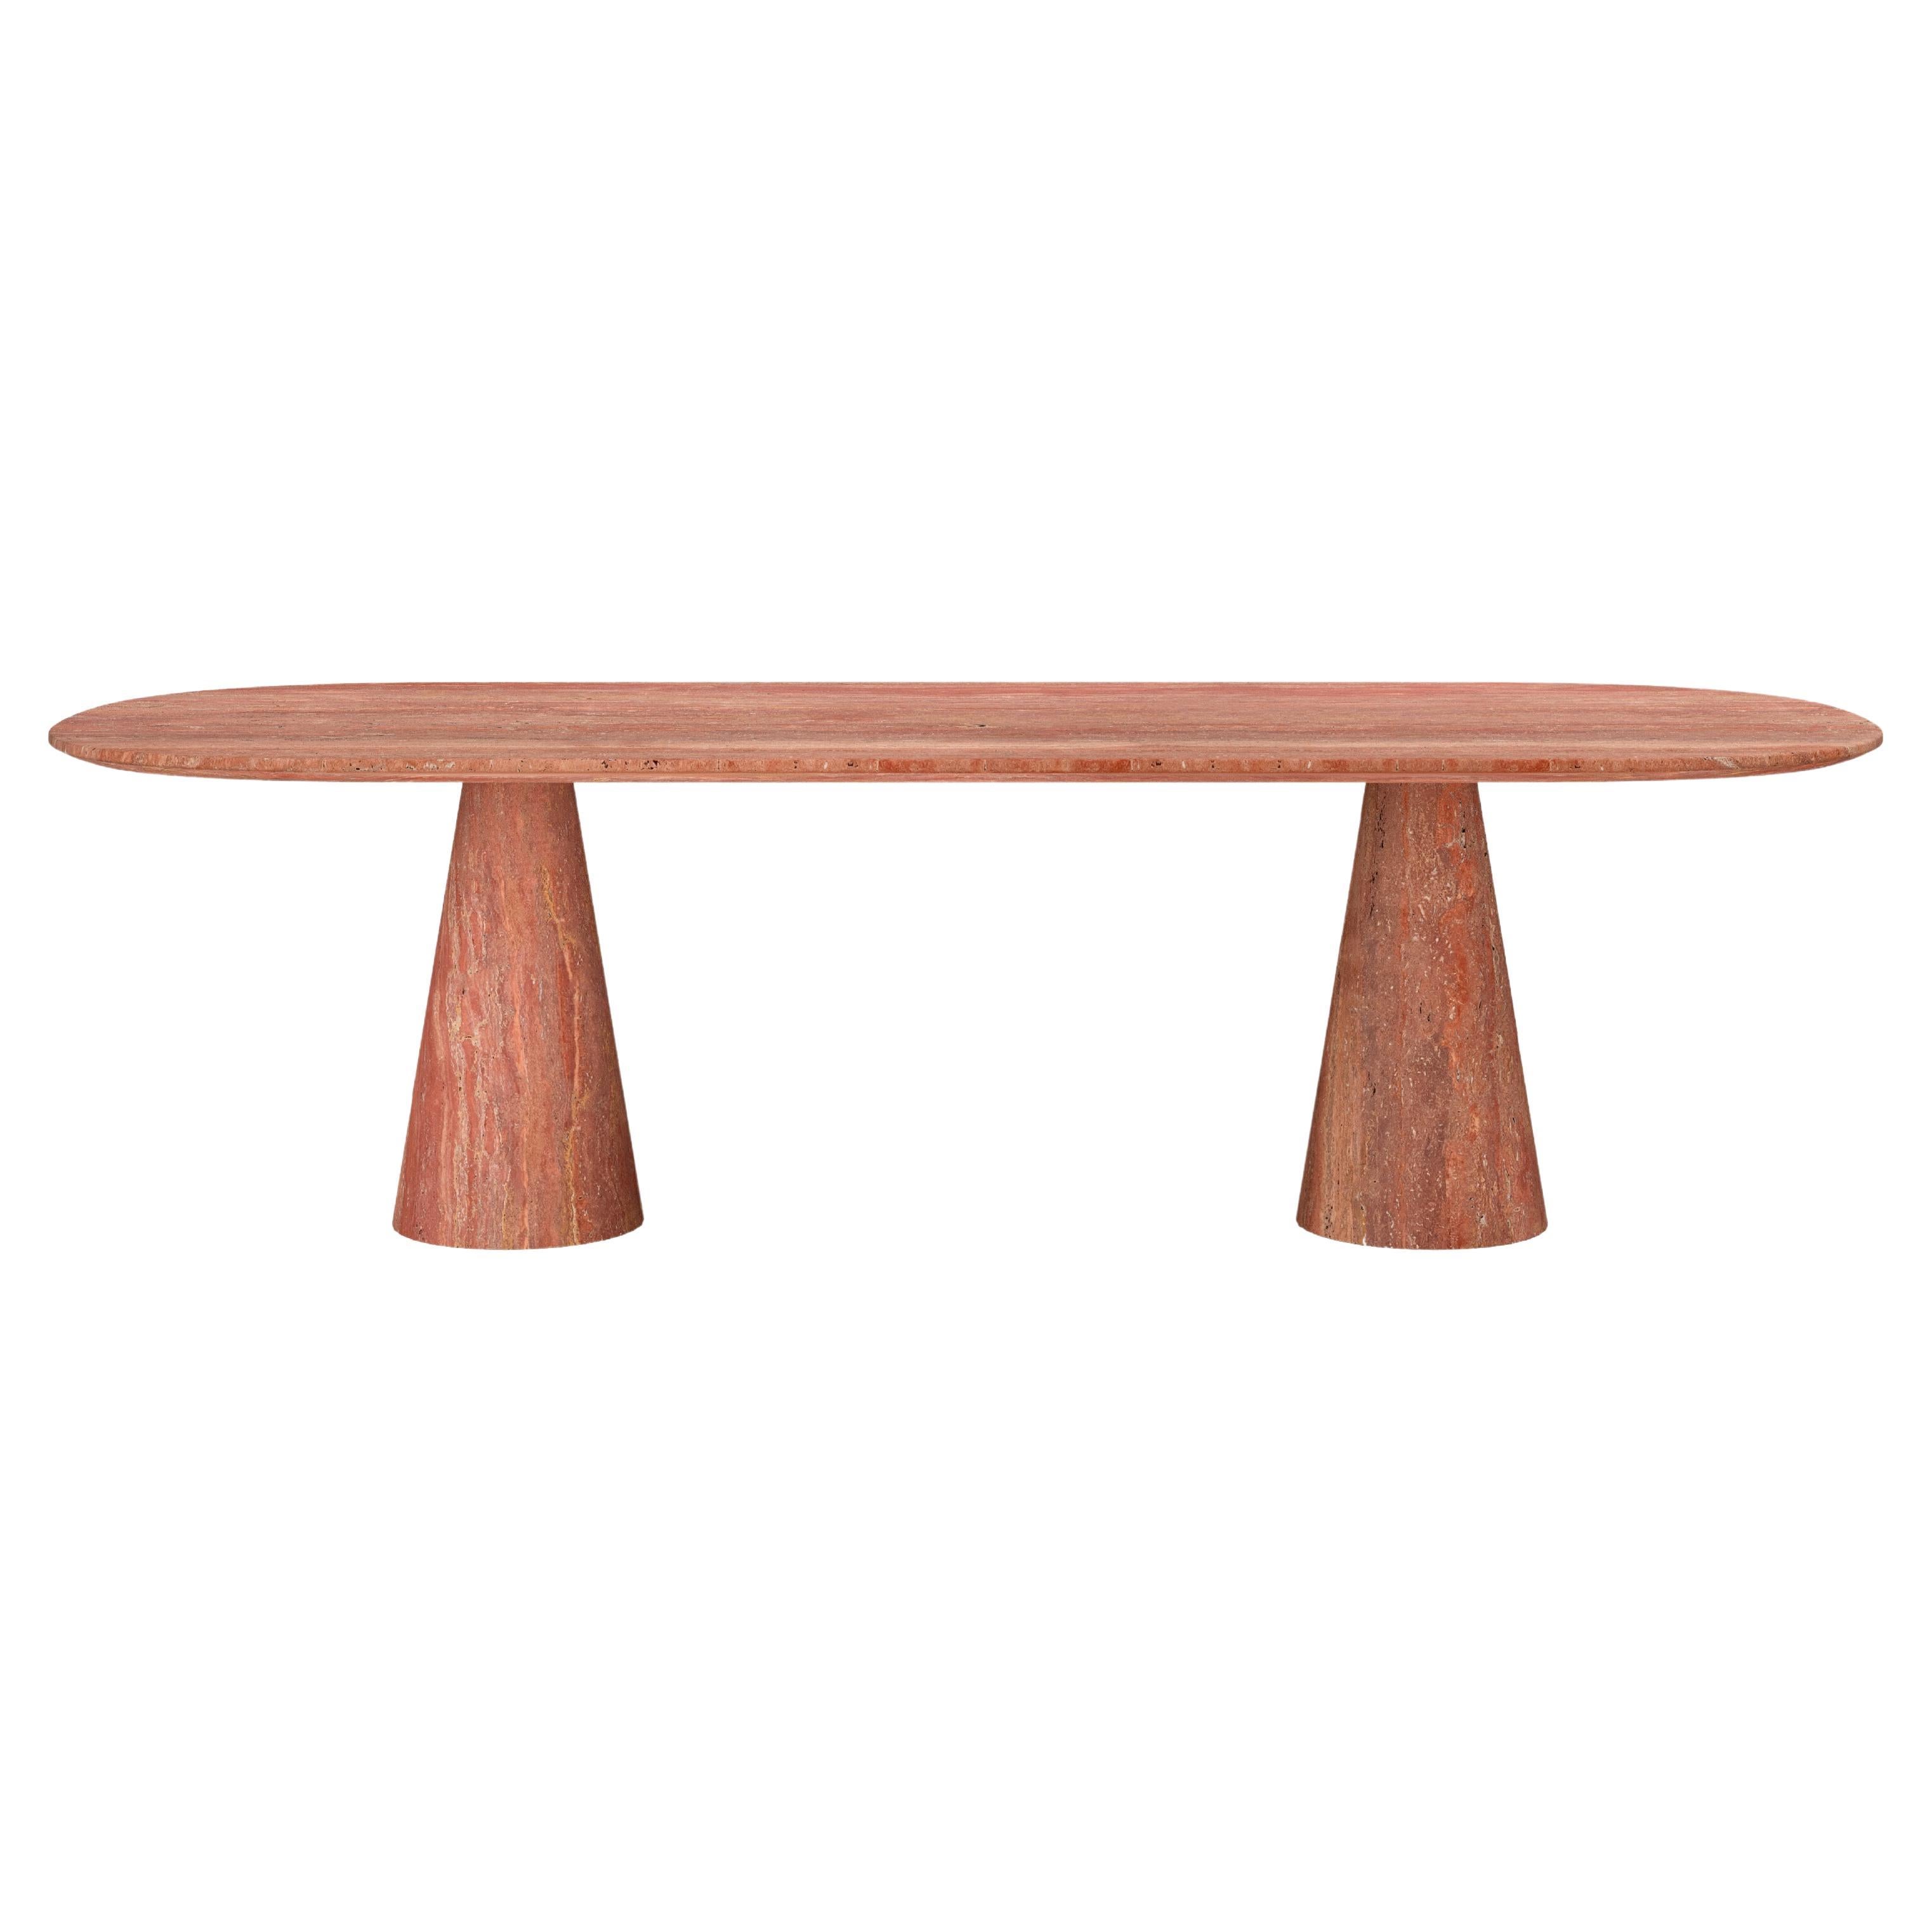 FORM(LA) Cono Oval Dining Table 96”L x 42”W x 30”H Travertino Rosso VC For Sale